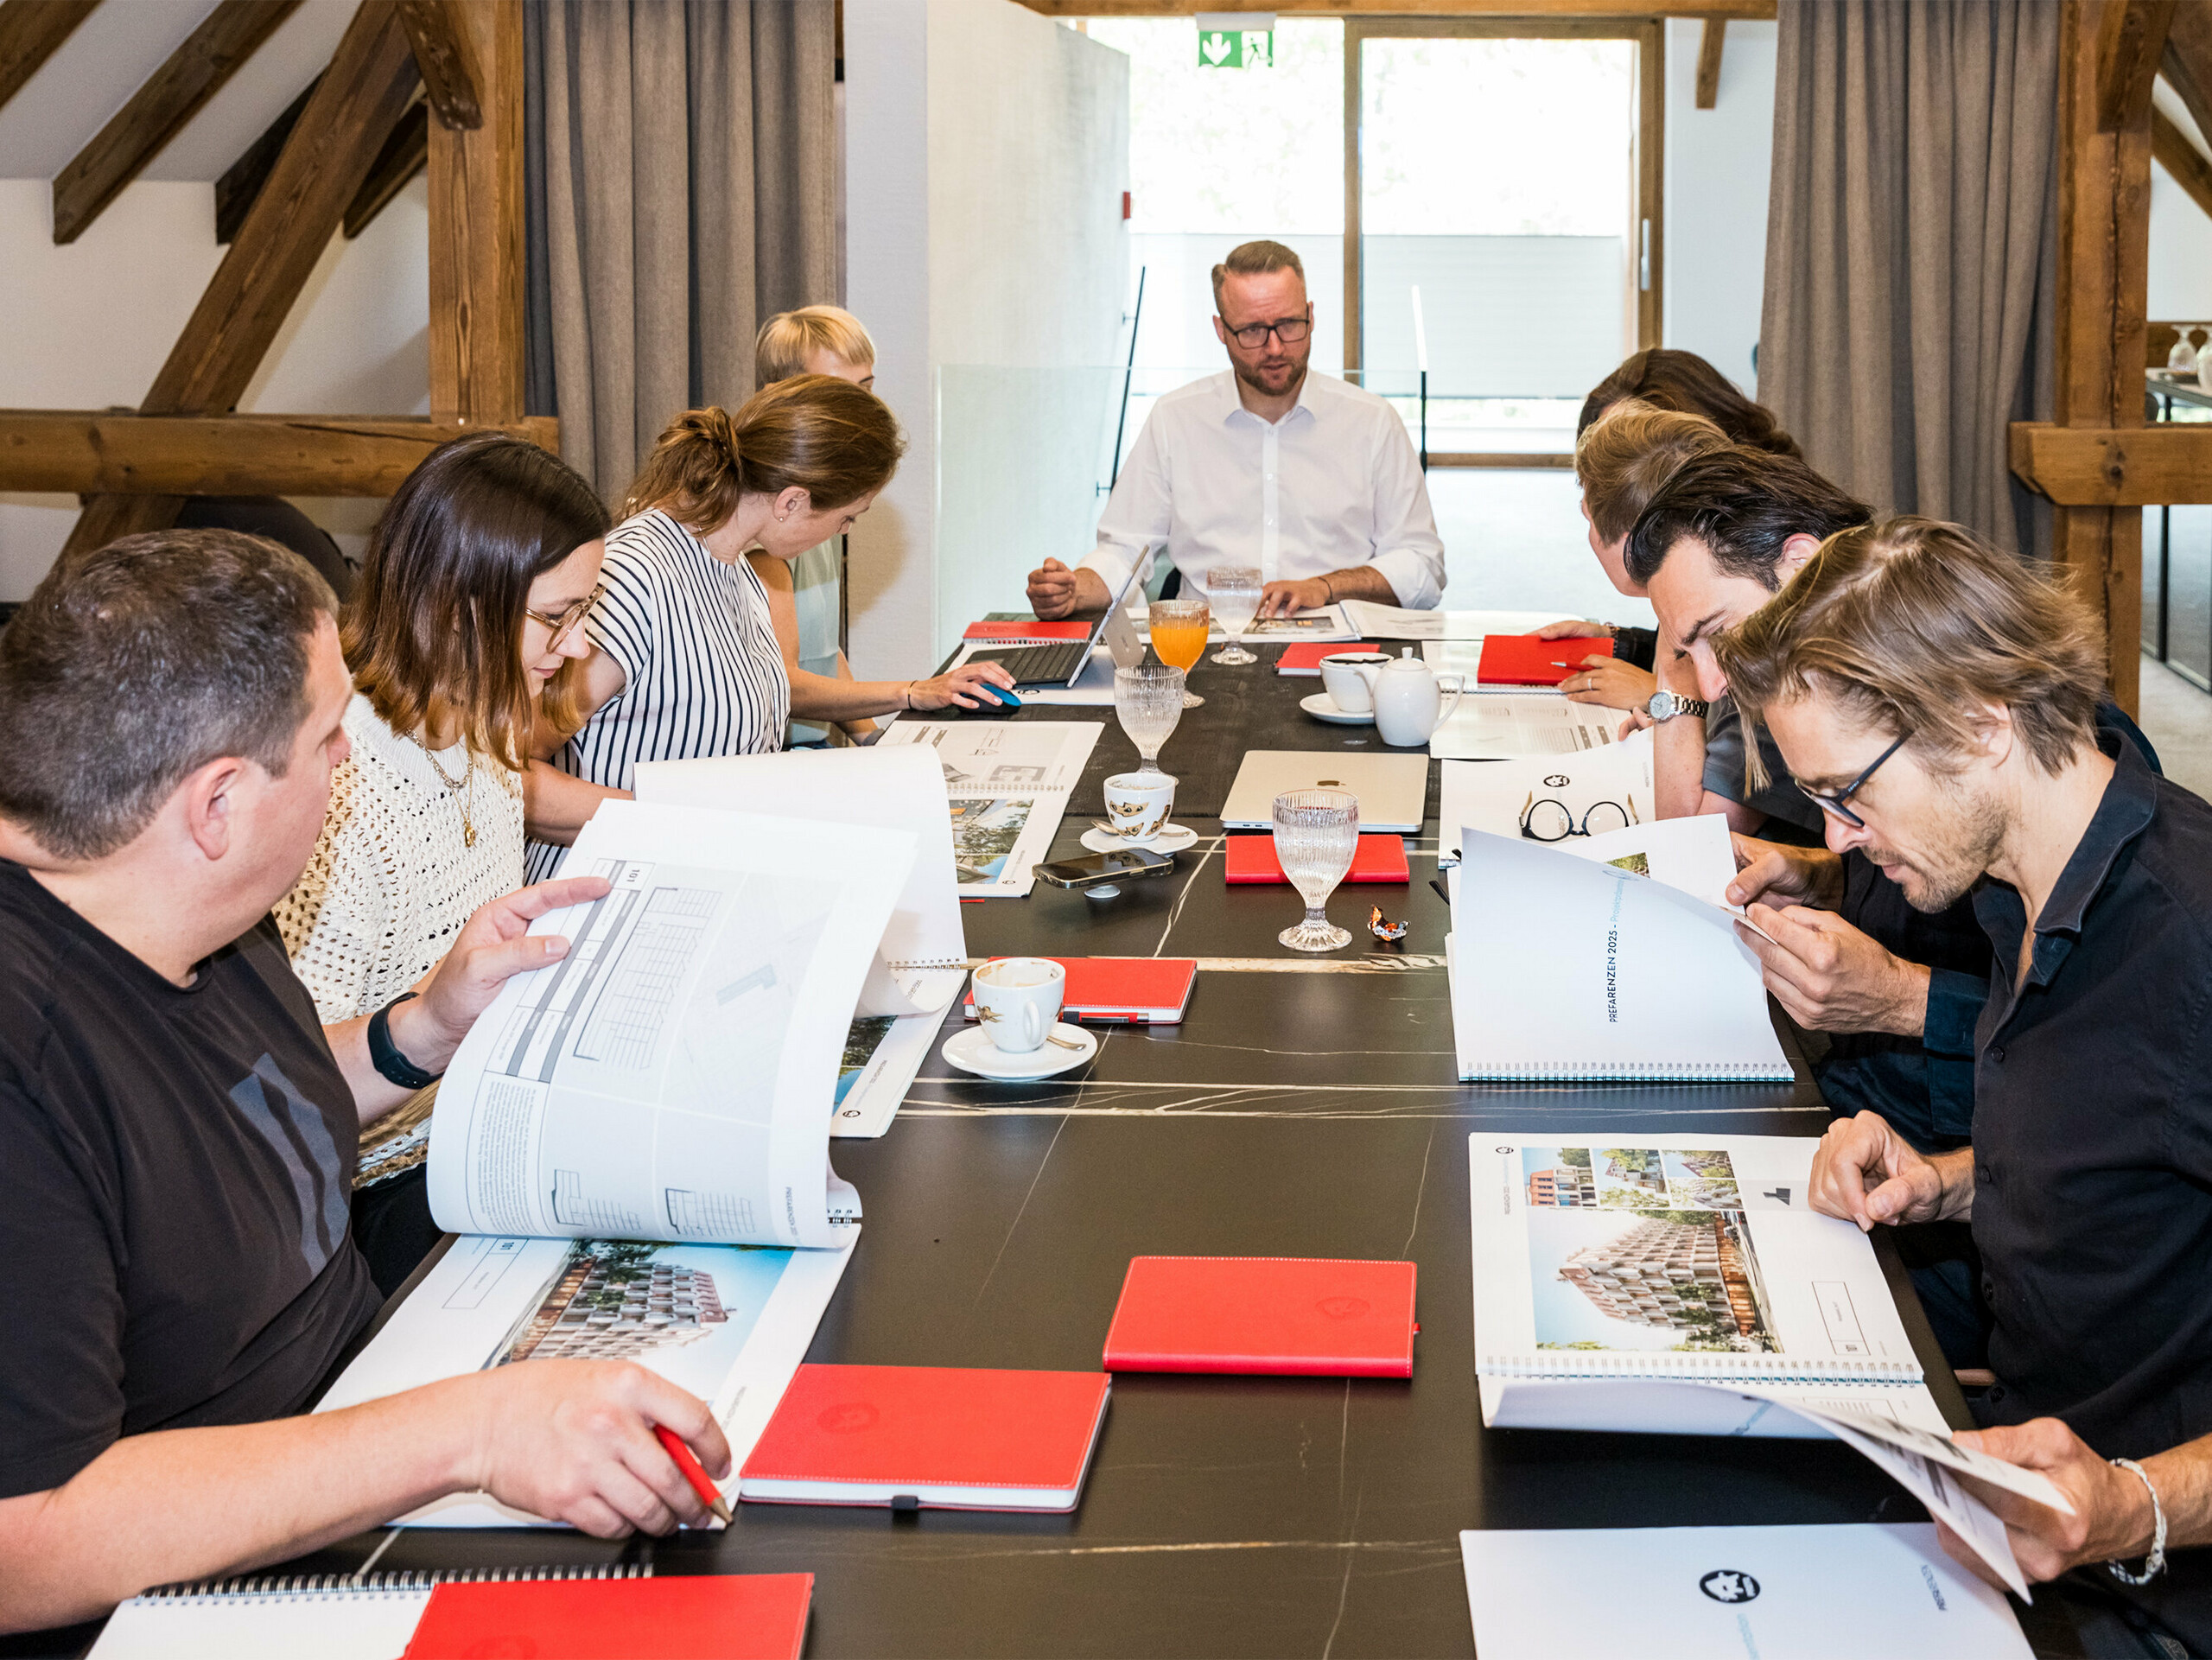 Dialóg expertov PREFARENZEN 2025: Desať architektov a expertov PREFA sedí za konferenčným stolom v sídle vinohradníka v regióne Seewinkel v Burgenlande. Na stole sú vyložené dokumenty a architektonické plány, zatiaľ čo účastníci intenzívne diskutujú a vyberajú dvanásť najzaujímavejších architektonických projektov pre architektonickú platformu PREFA 2025. Diskusia sa zamerala na ekologické a sociálne výzvy, funkčnosť, jednoduchosť a pridanú hodnotu architektúry. Na stole sú rozložené aj šálky na kávu, poháre a červené zápisníky, ktoré podčiarkujú sústredenú pracovnú atmosféru.